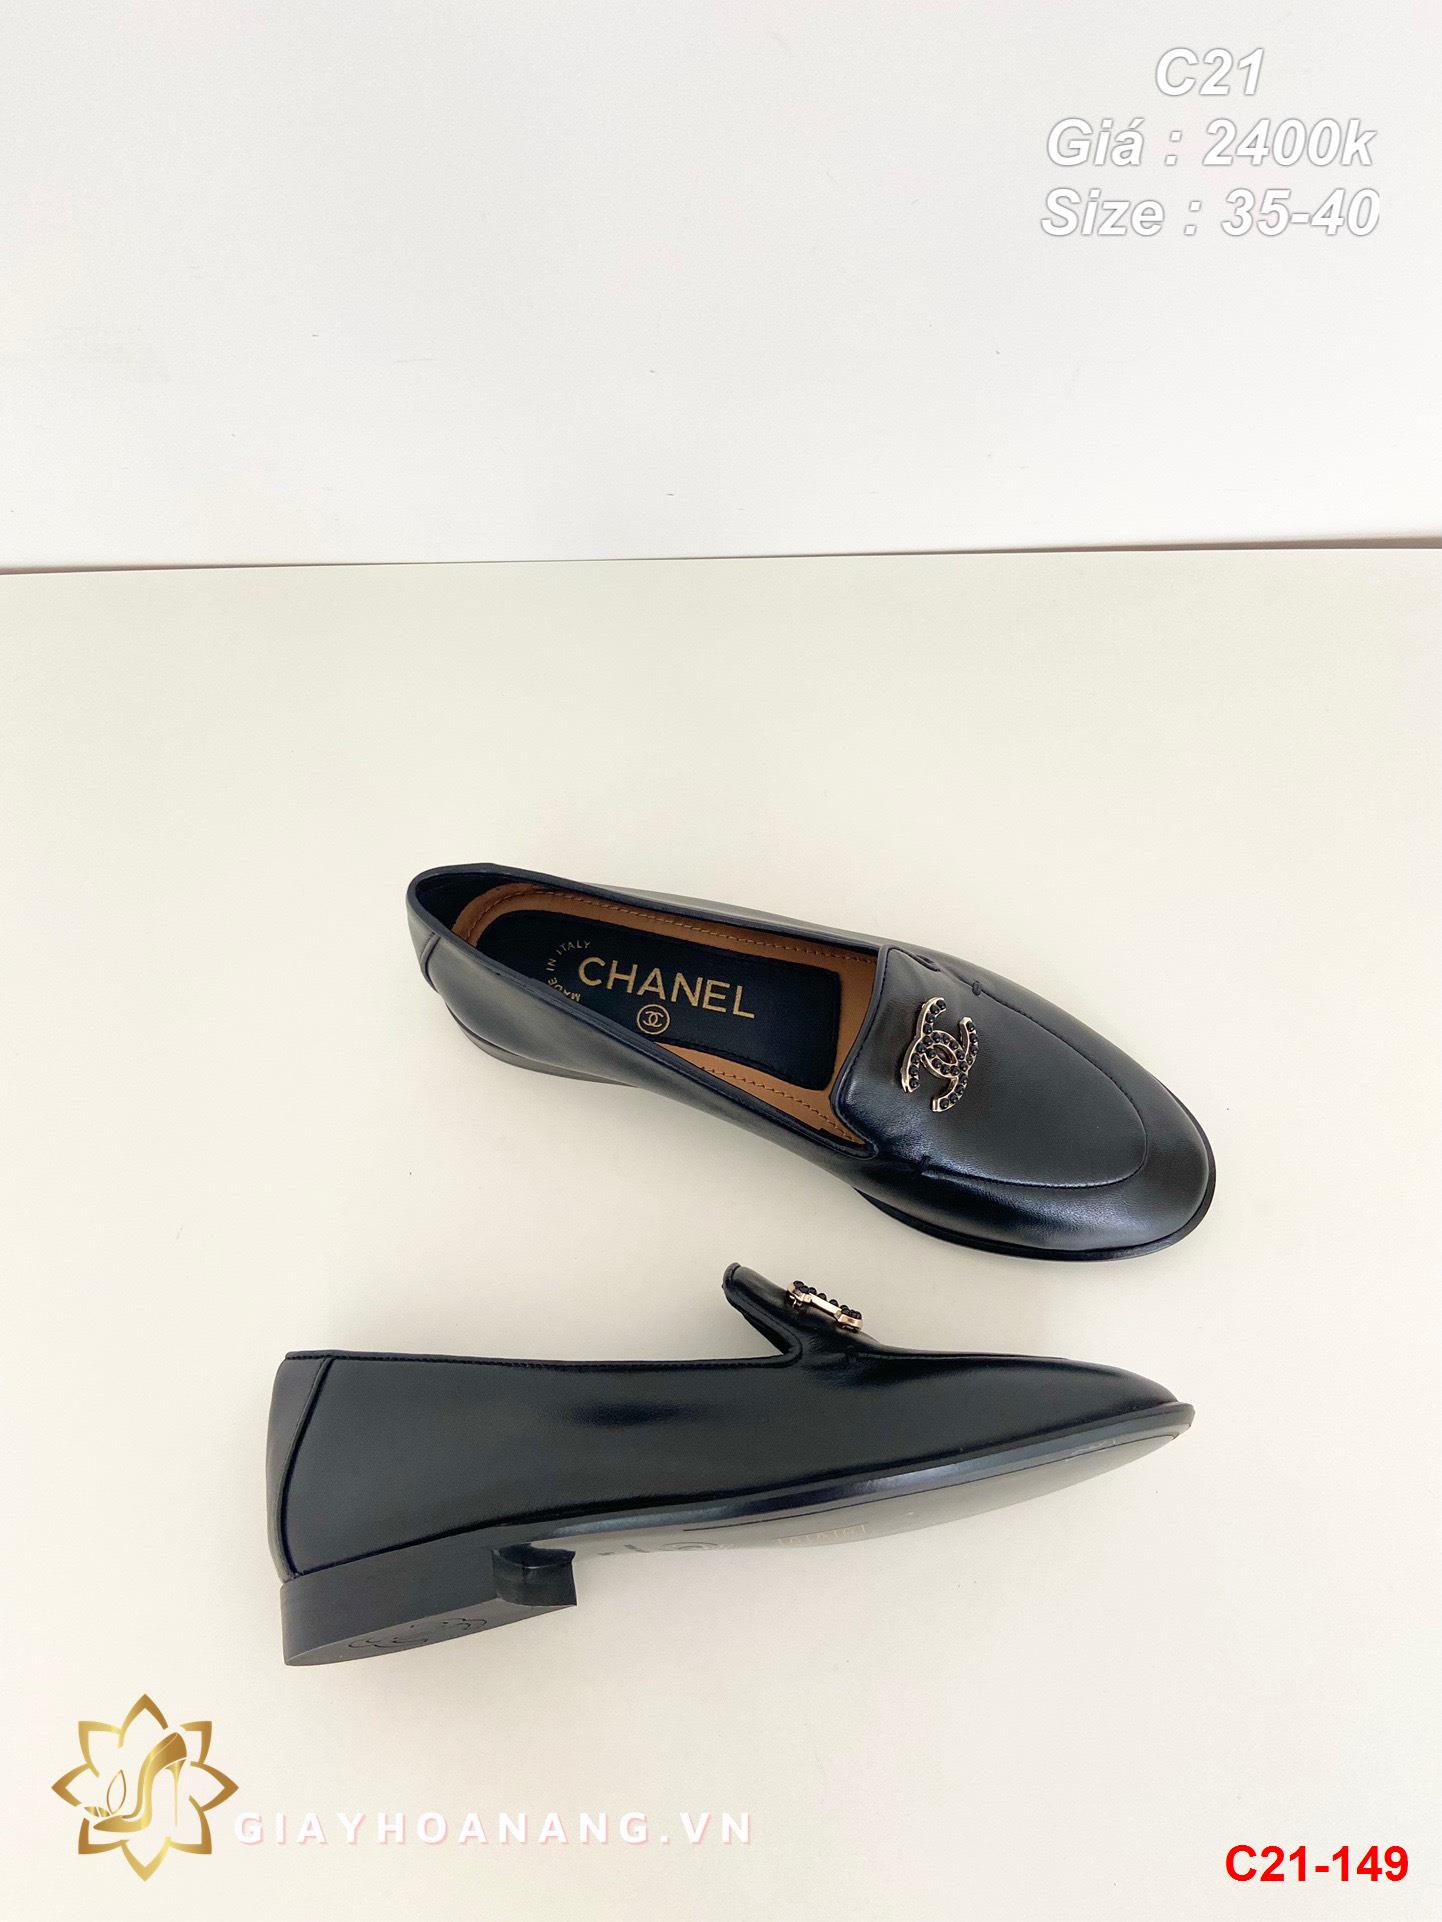 C21-149 Chanel giày lười siêu cấp